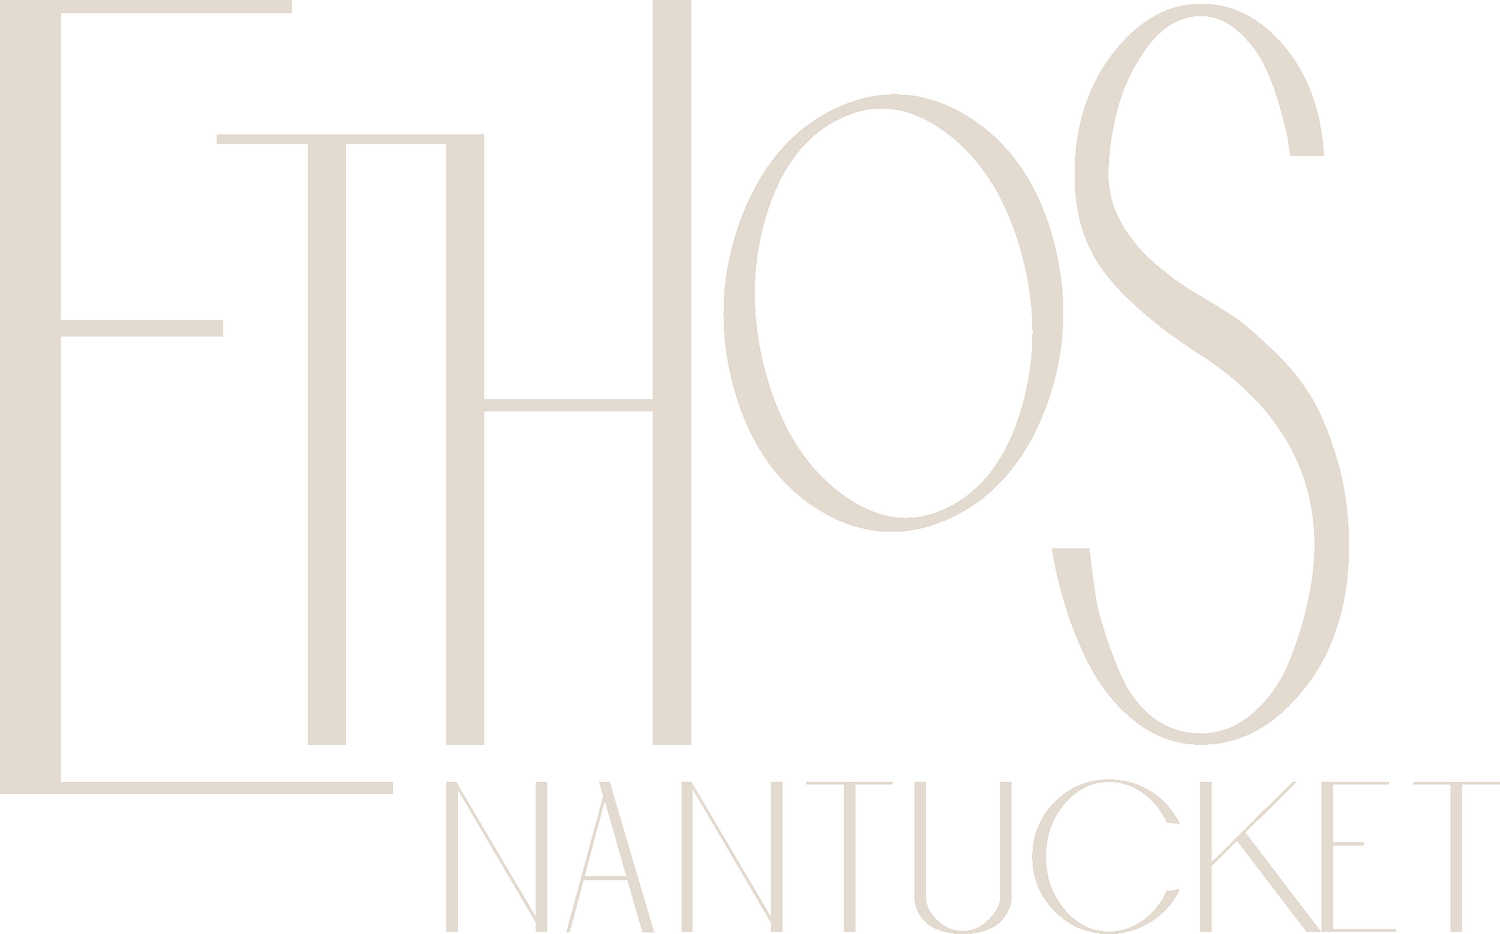 Ethos Nantucket